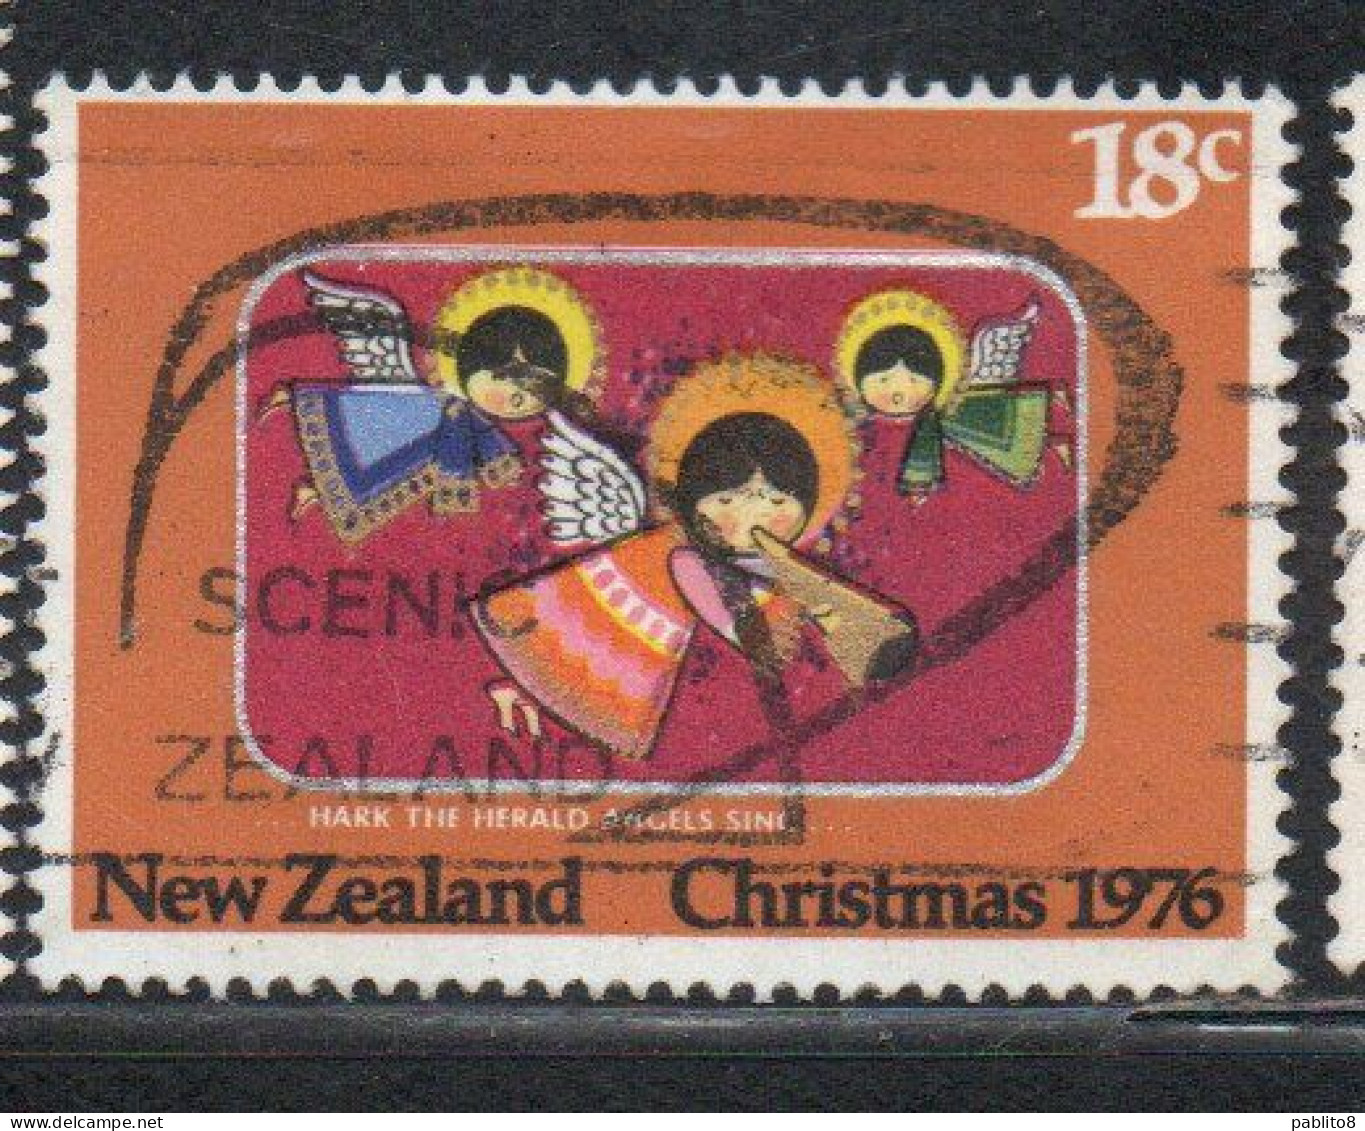 NEW ZEALAND NUOVA ZELANDA 1976 HARK THE HERALD ANGELS SING CHRISTMAS NATALE NOEL WEIHNACHTEN NAVIDAD 18c USED - Oblitérés